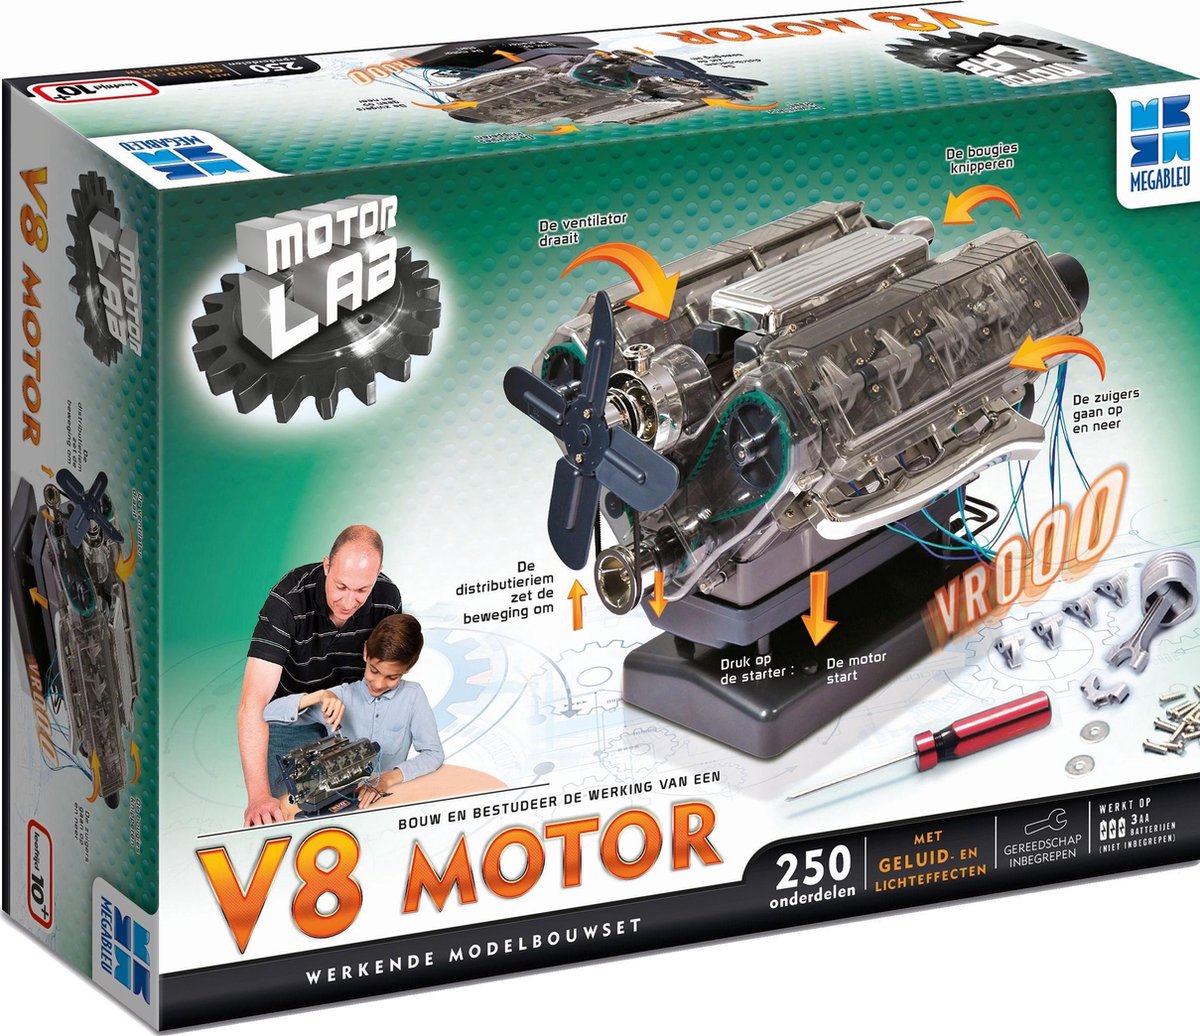 kroon Durf Clan Motor Lab Bouwmodelset: V8 Motor - Modelbouw - Werkende Motor - Miniatuur  bouwpakket | bol.com